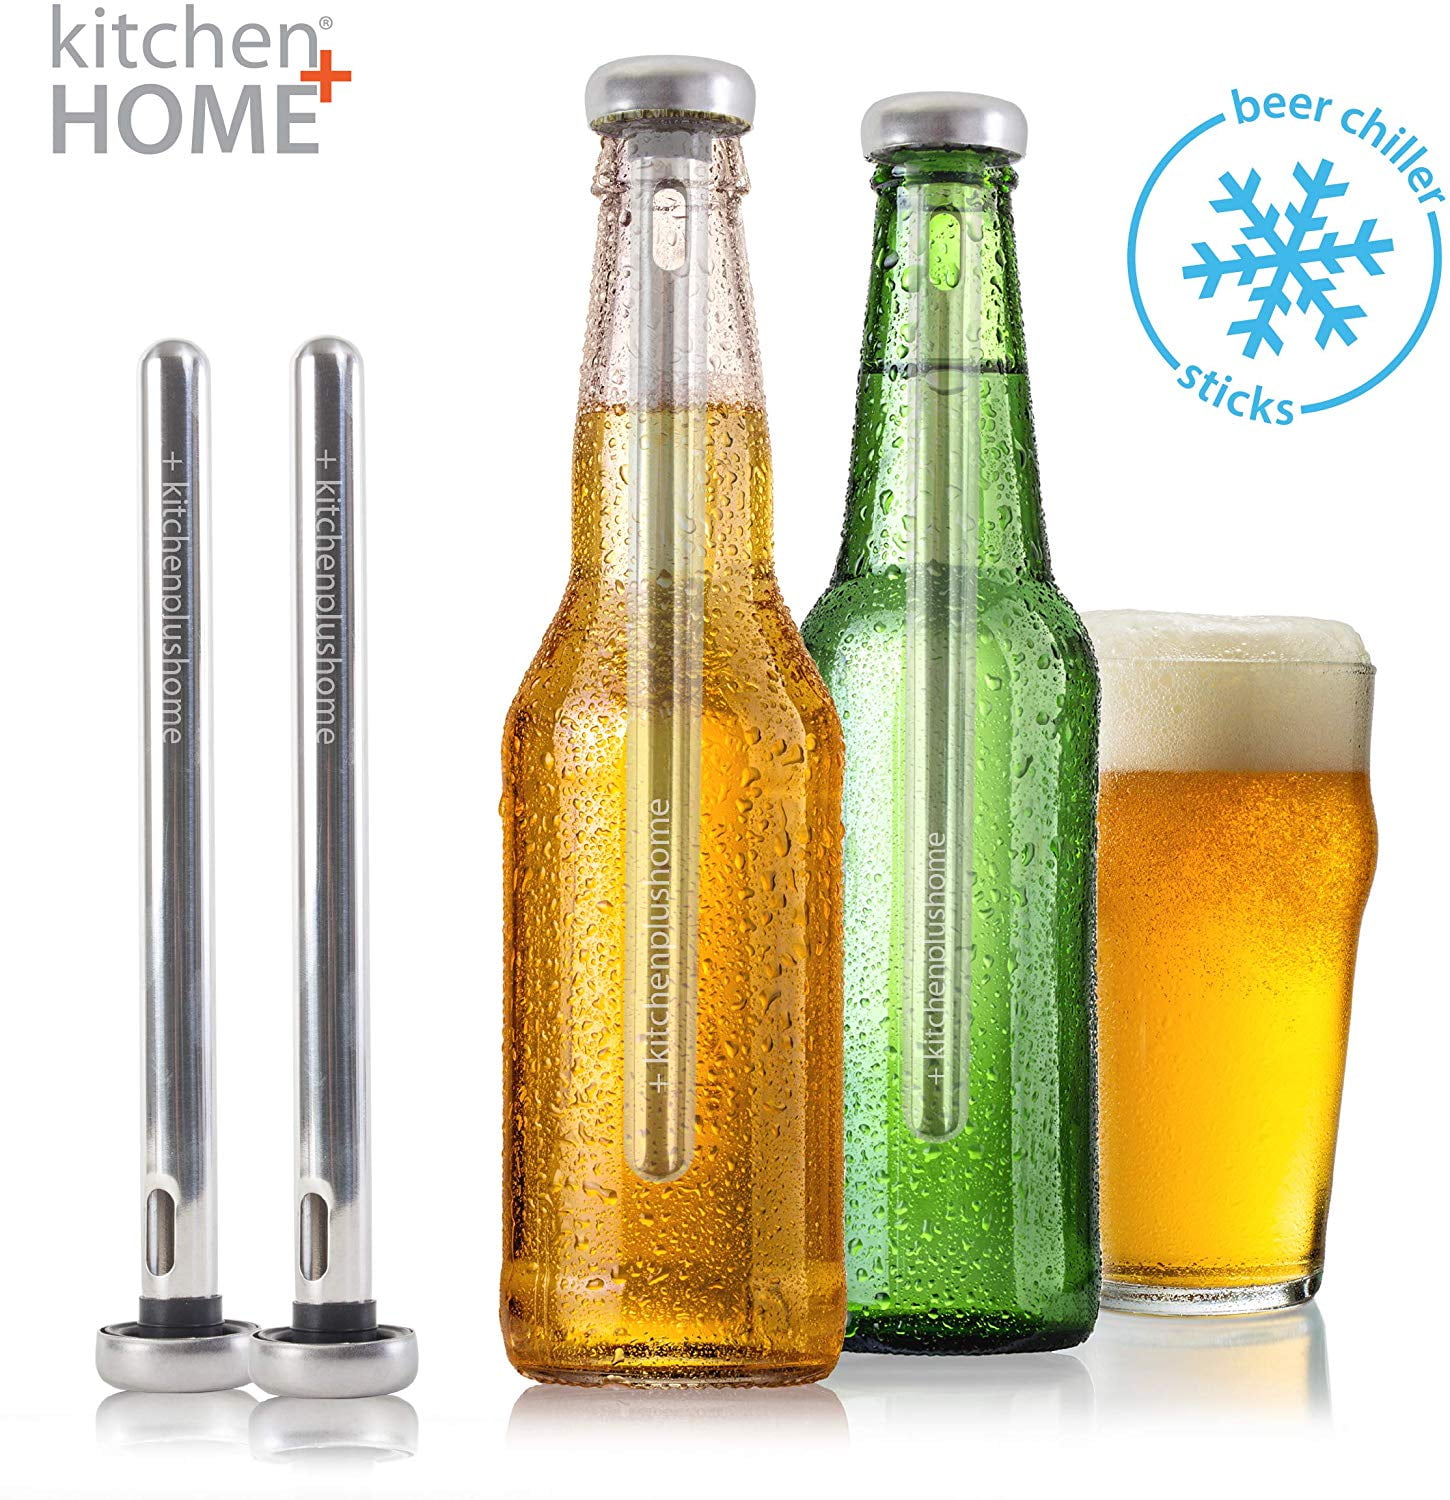 Kitchen + Home Beer Chiller Sticks - Stainless Steel Beverage